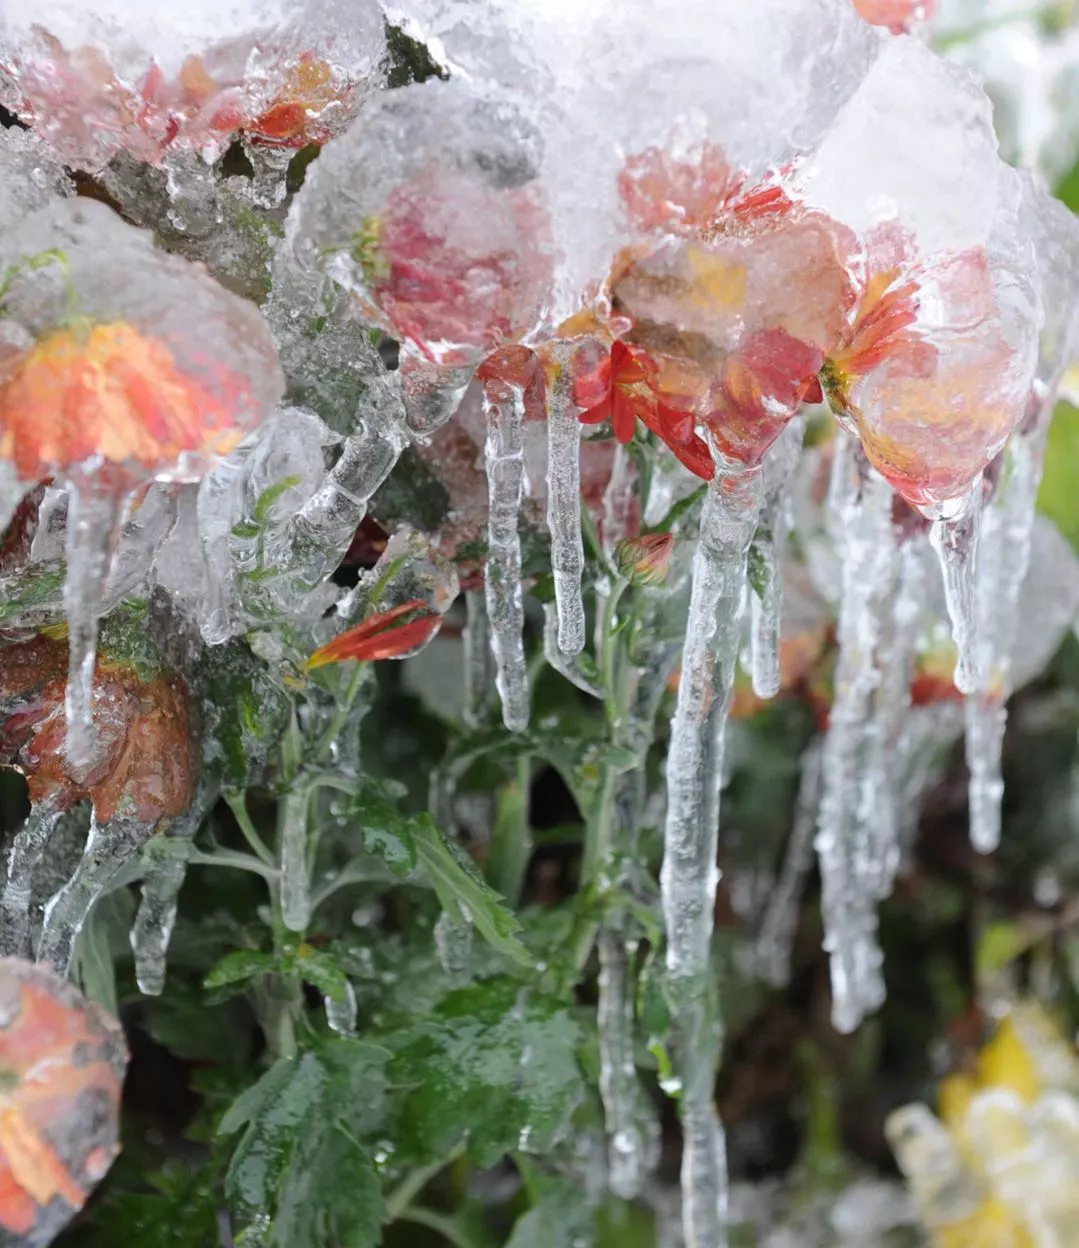 这是湖南郴州市街道旁被冰雪包裹的鲜花(2008年2月2日摄).